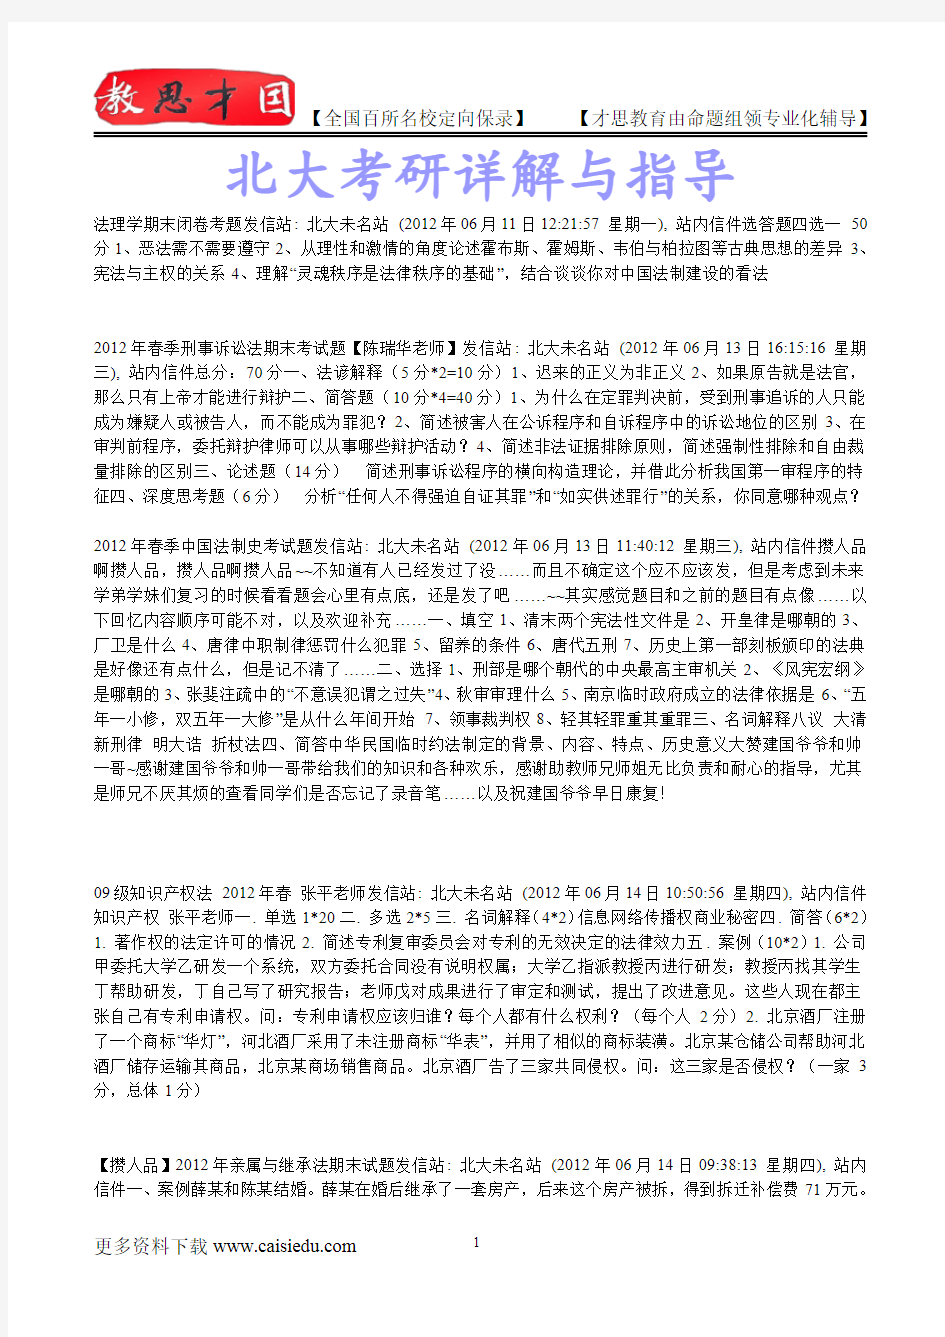 2015年北京大学法理学资料、复试笔记,复试真题,考研大纲,考研真题,考研经验